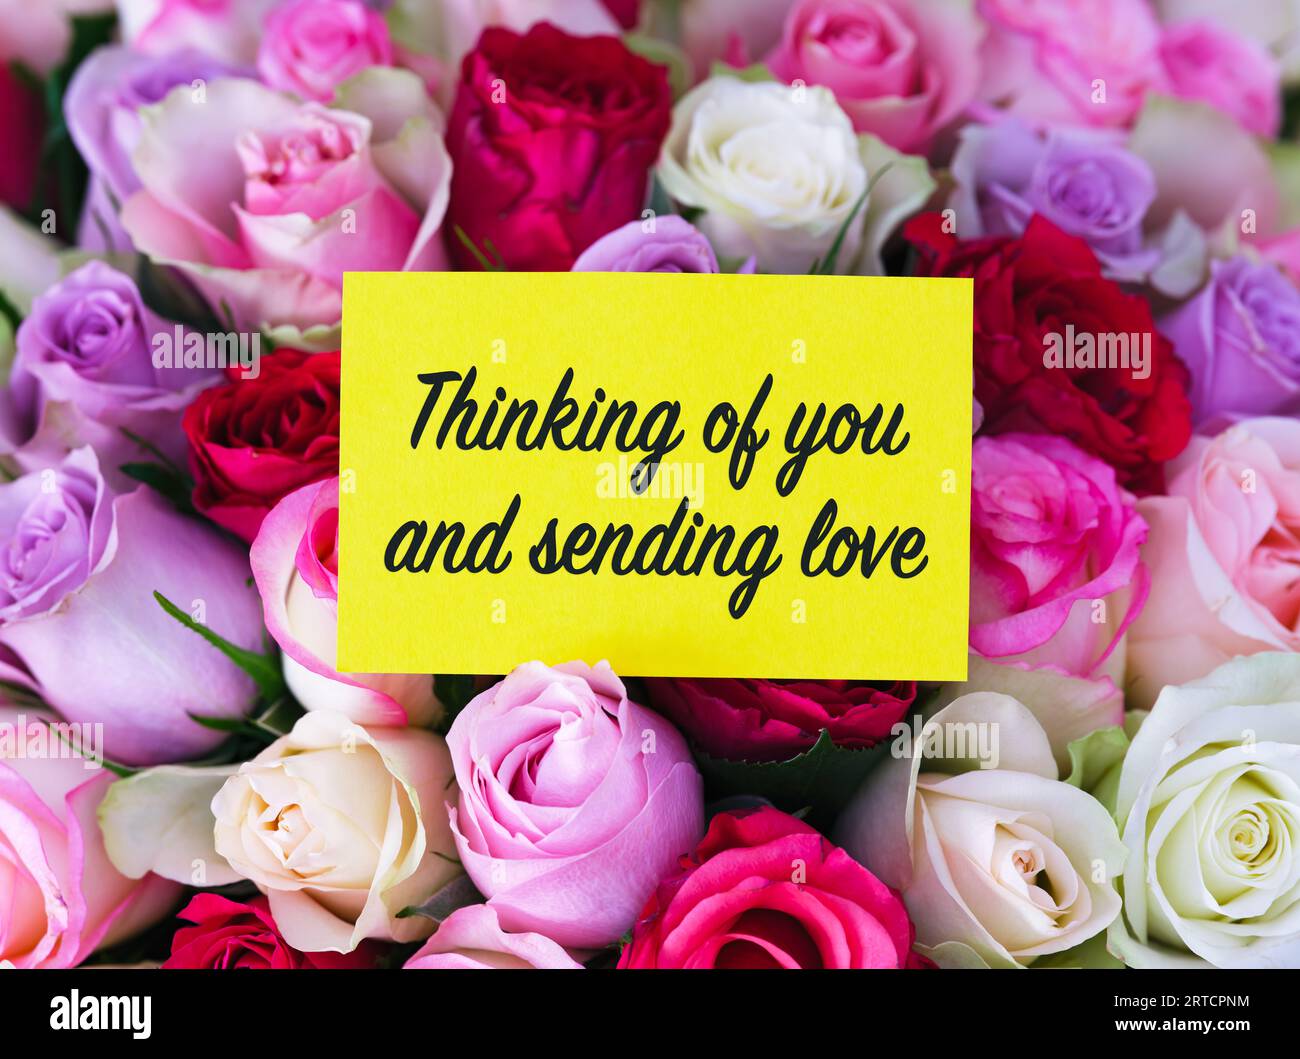 Une carte de voeux jaune avec des mots pensant à vous et envoyant l'amour posé sur un grand bouquet de roses colorées Banque D'Images